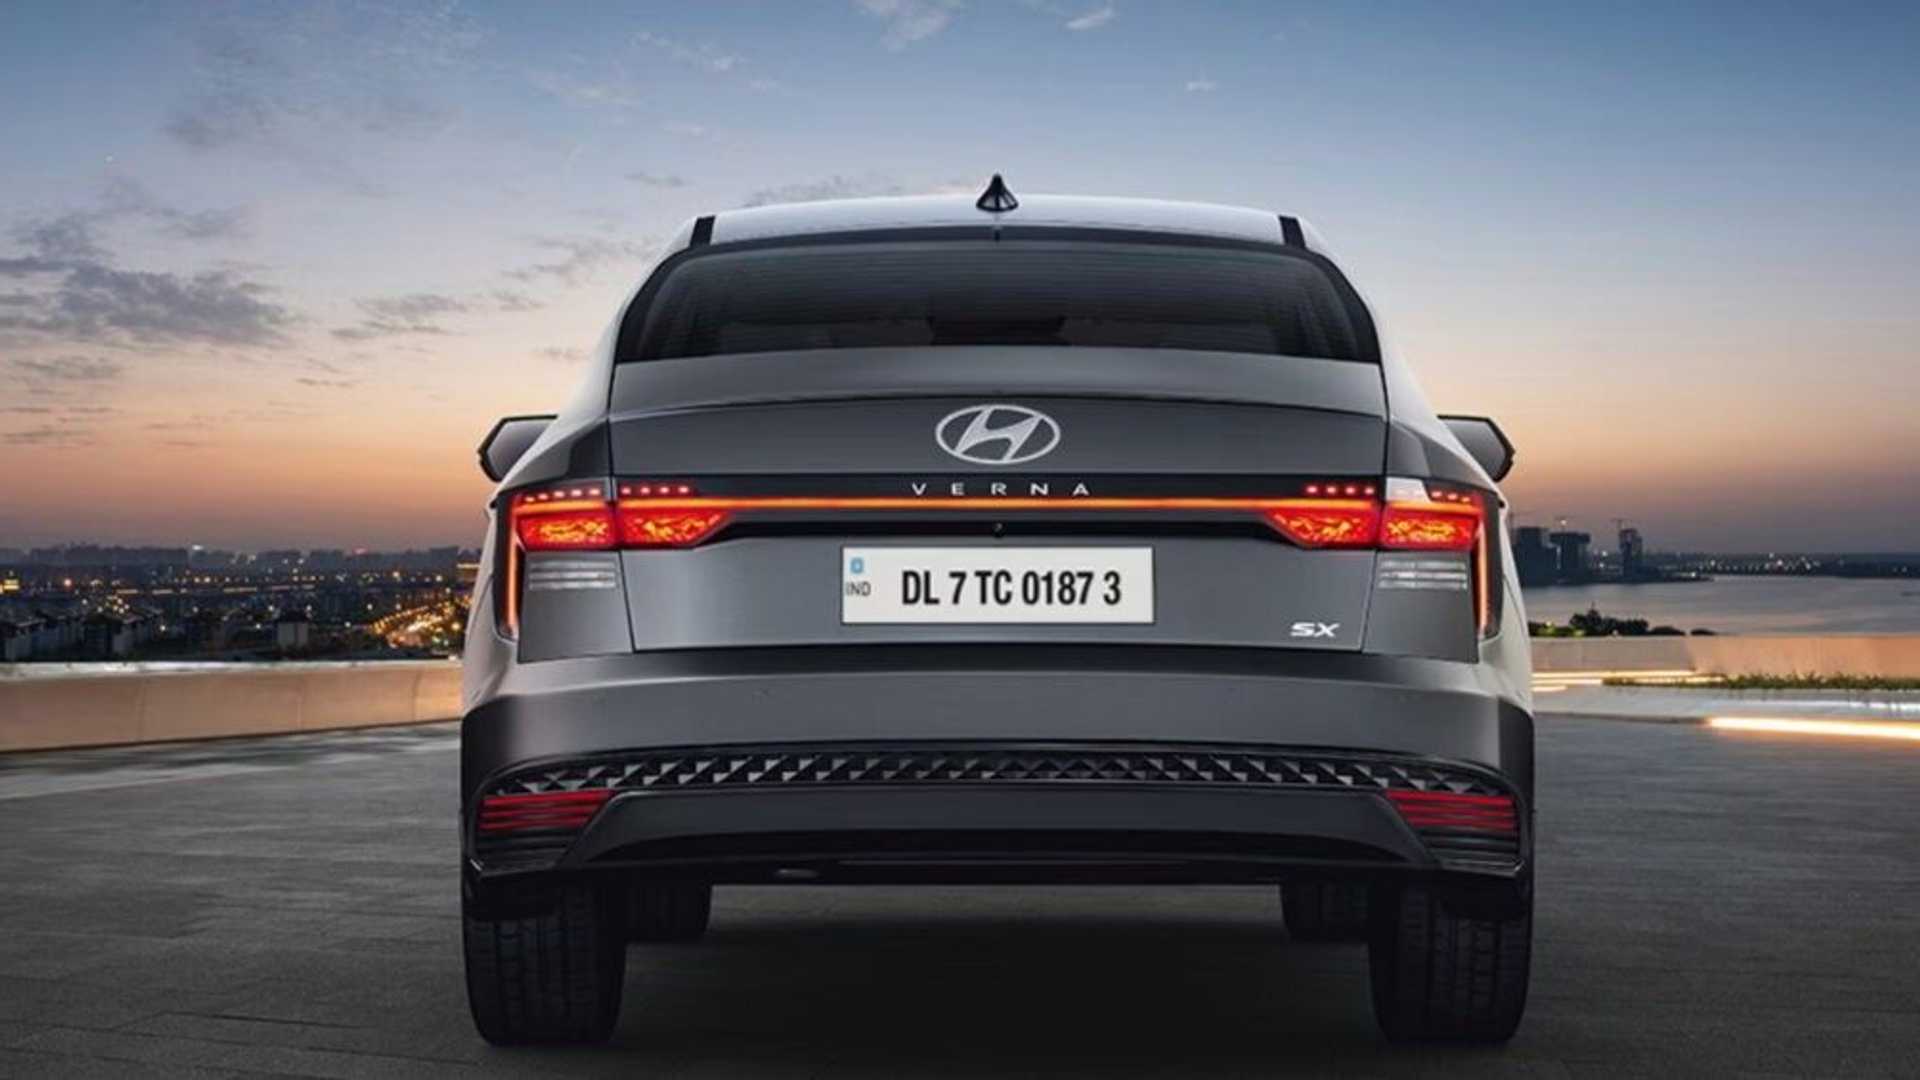 Yeni Accent'in izleri: 2023 Hyundai Verna tanıtıldı